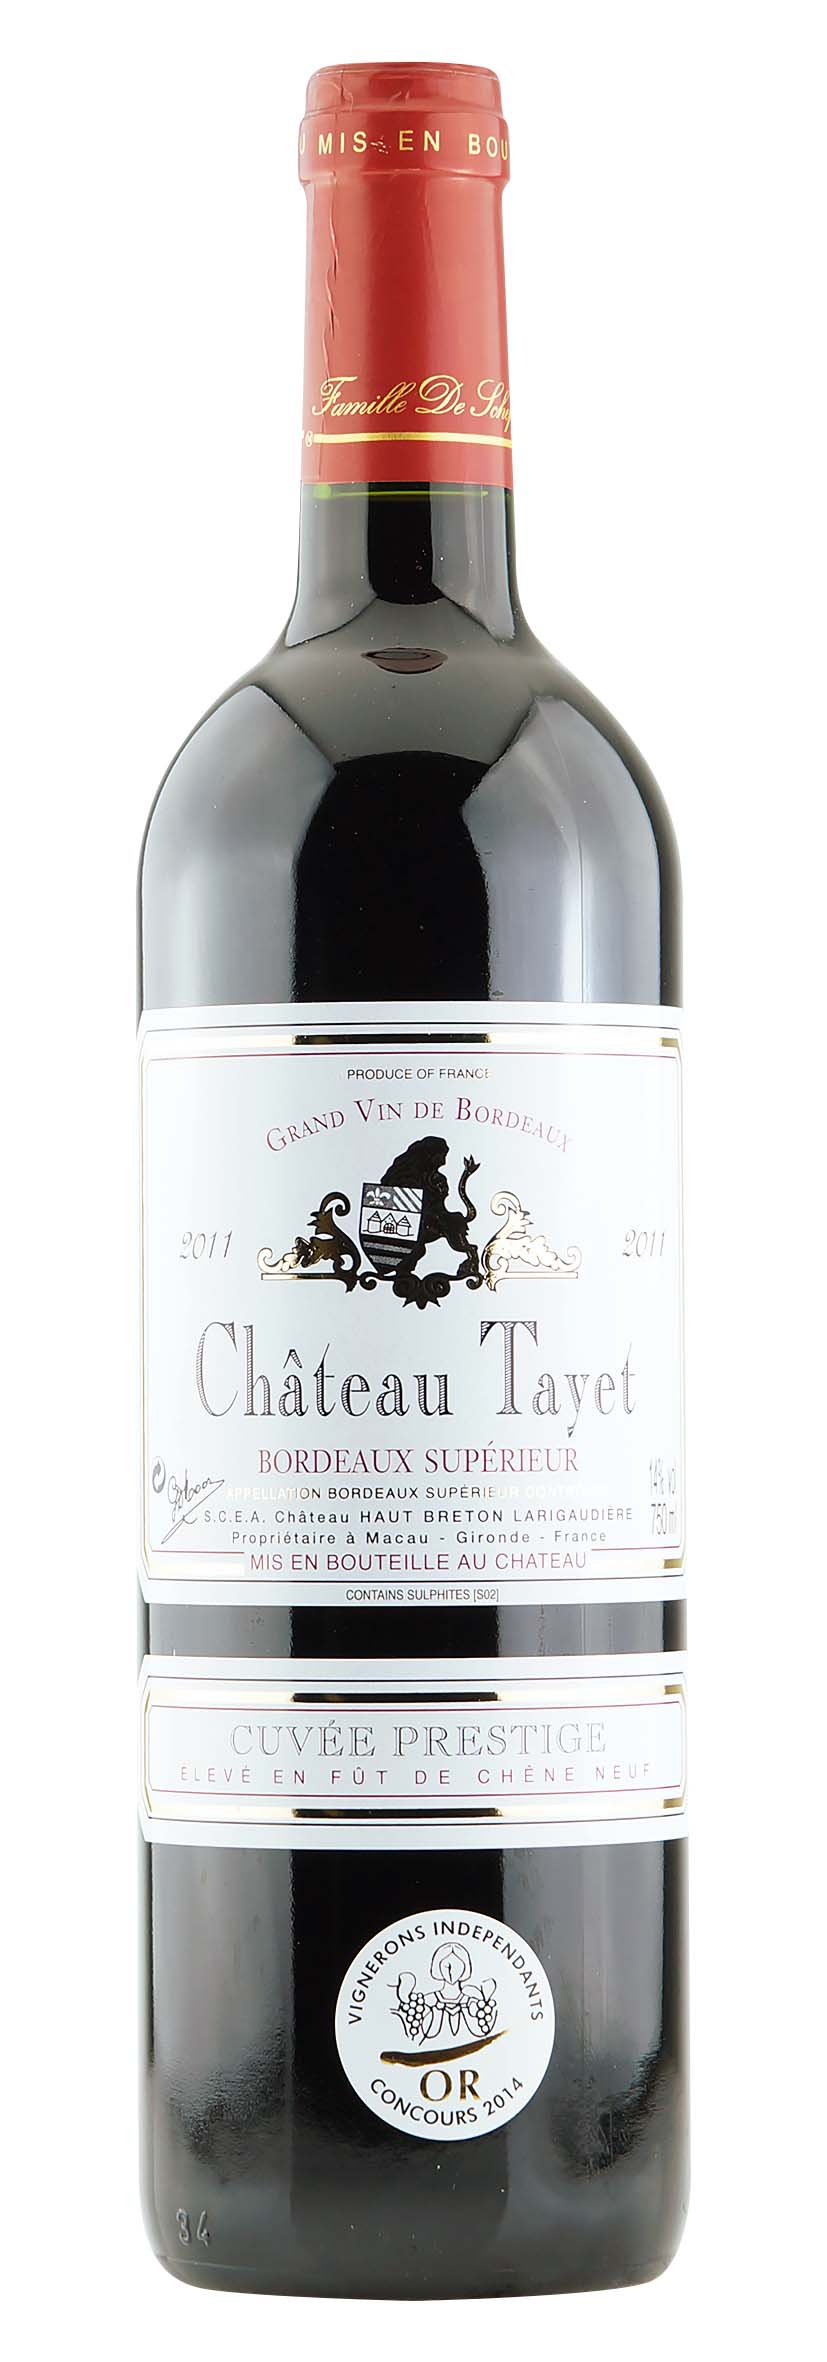 Bordeaux Supérieur AOC Château Tayet Cuvée Prestige 2011